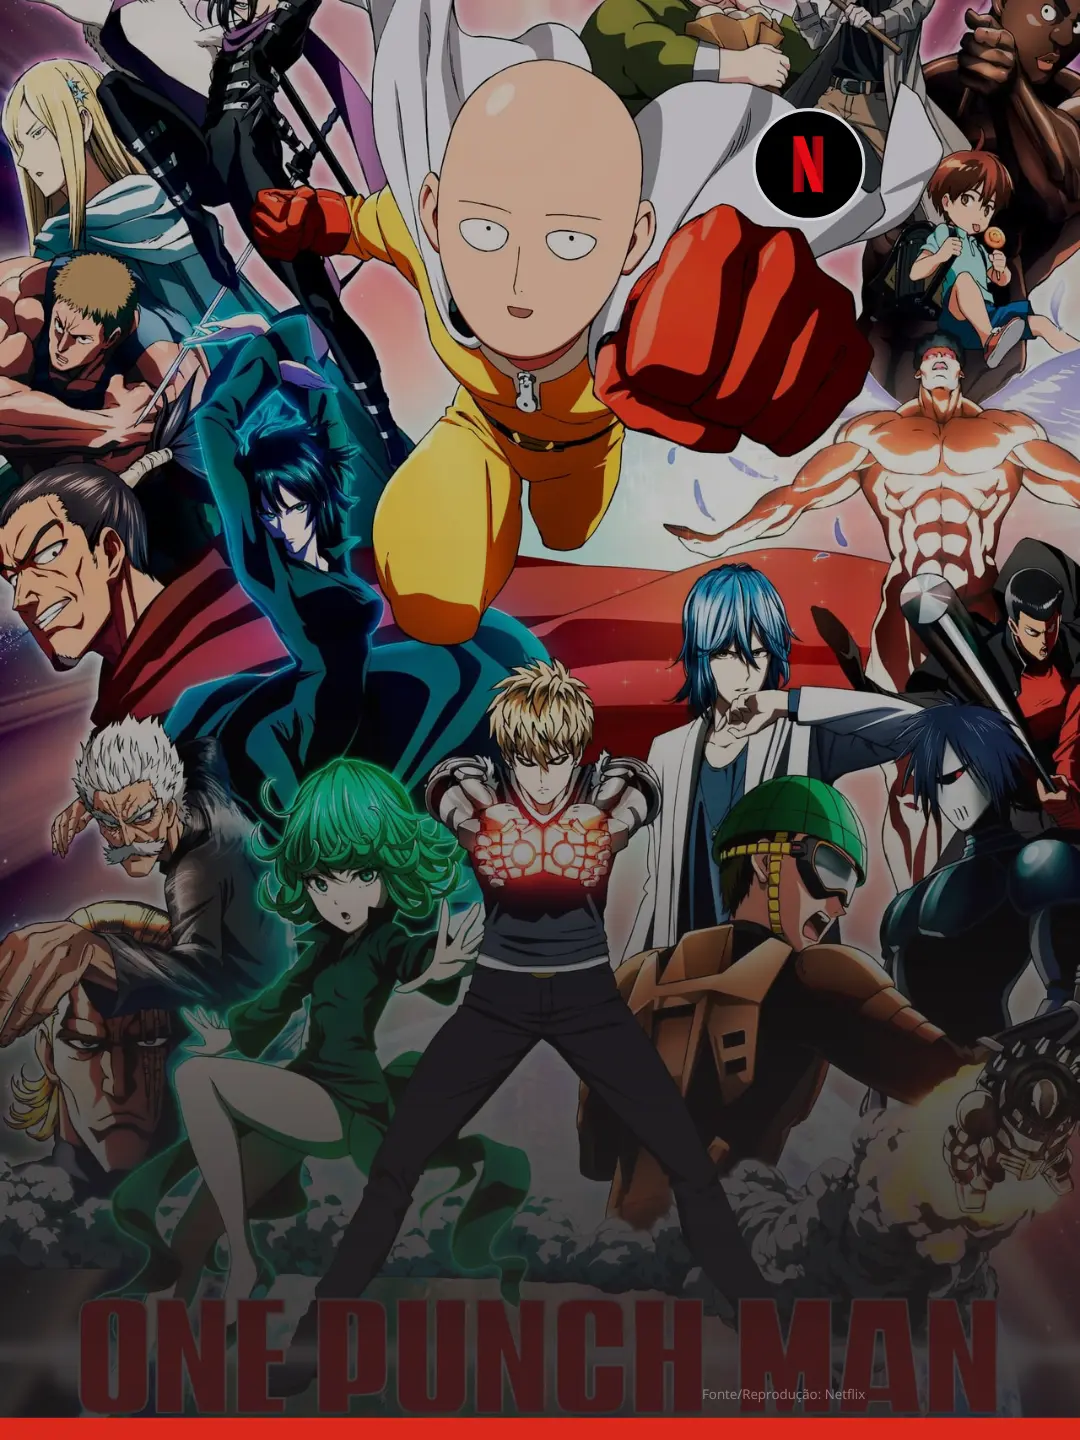 15 Melhores Animes da Netflix